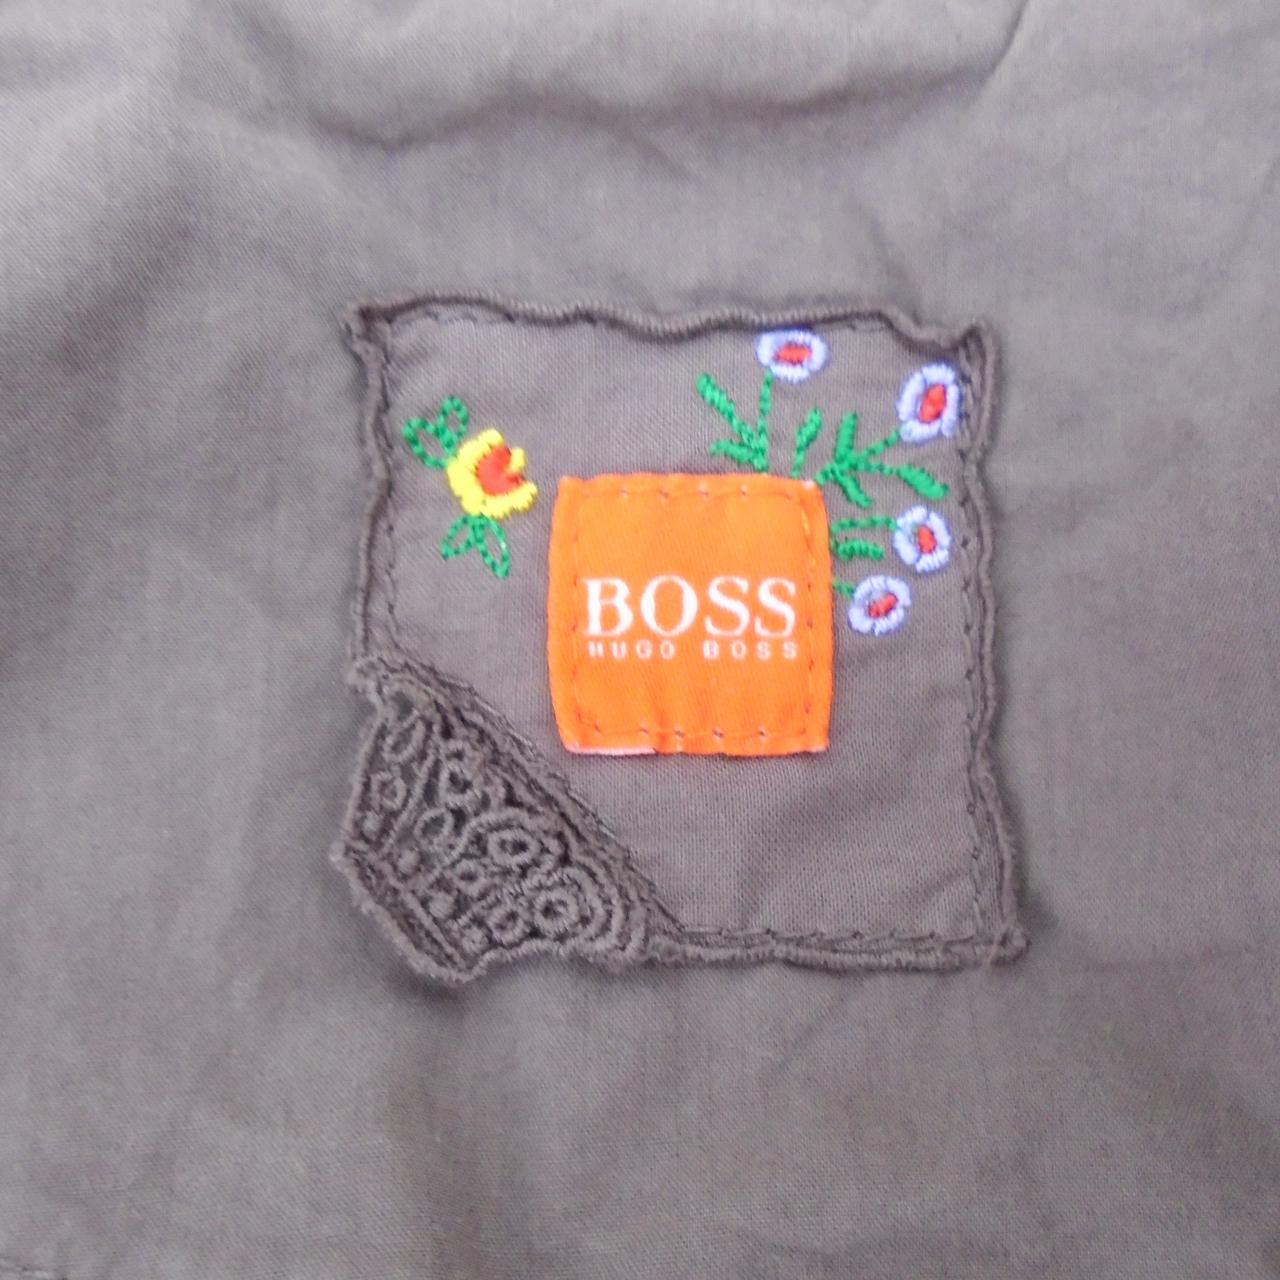 Women's Jacket Hugo Boss. Brown. L. Used. Very good